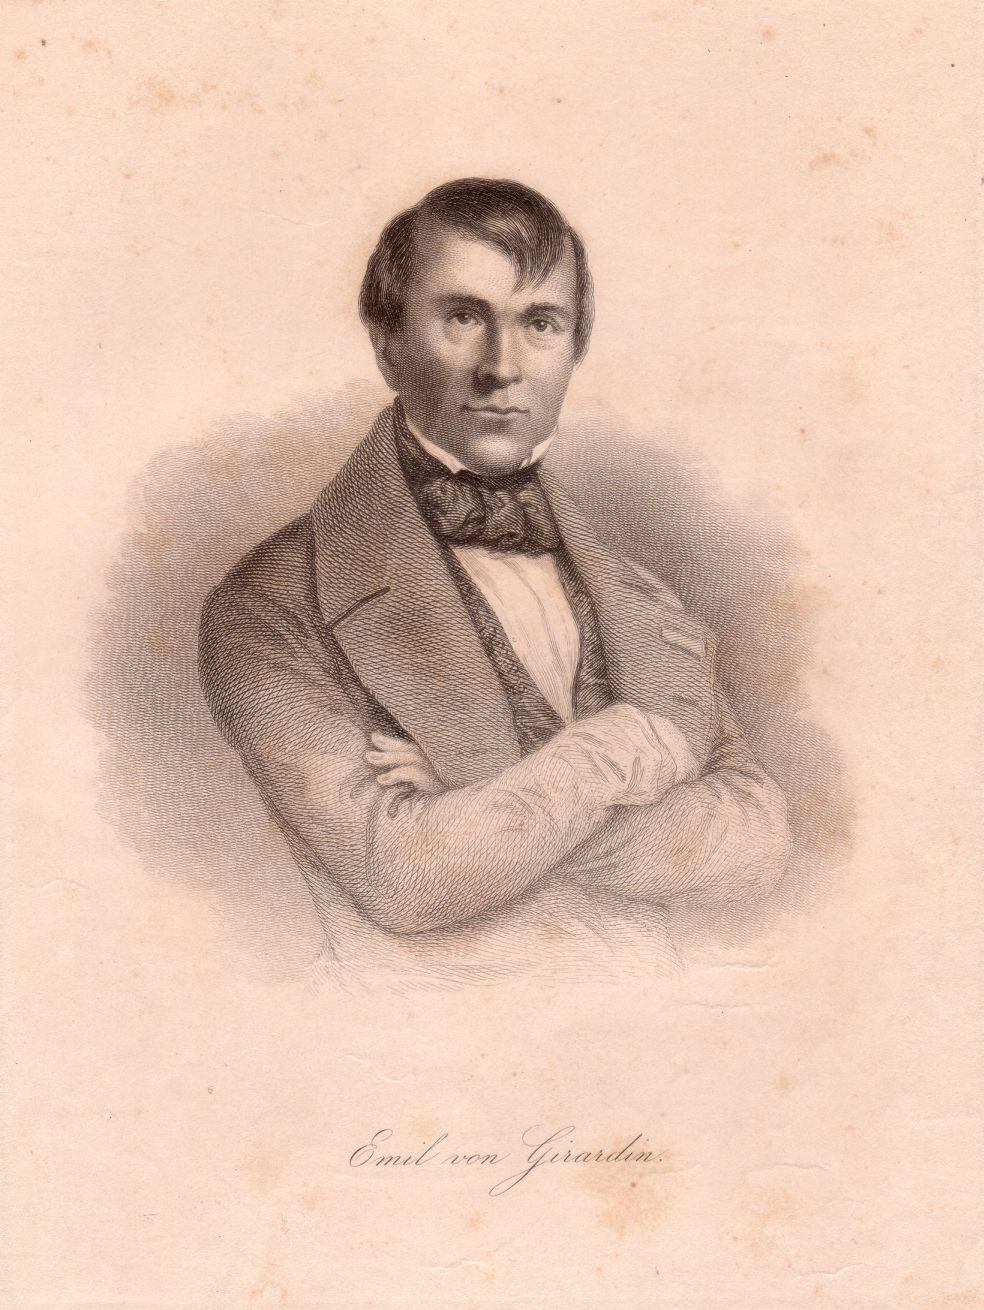 Émile de Girardin